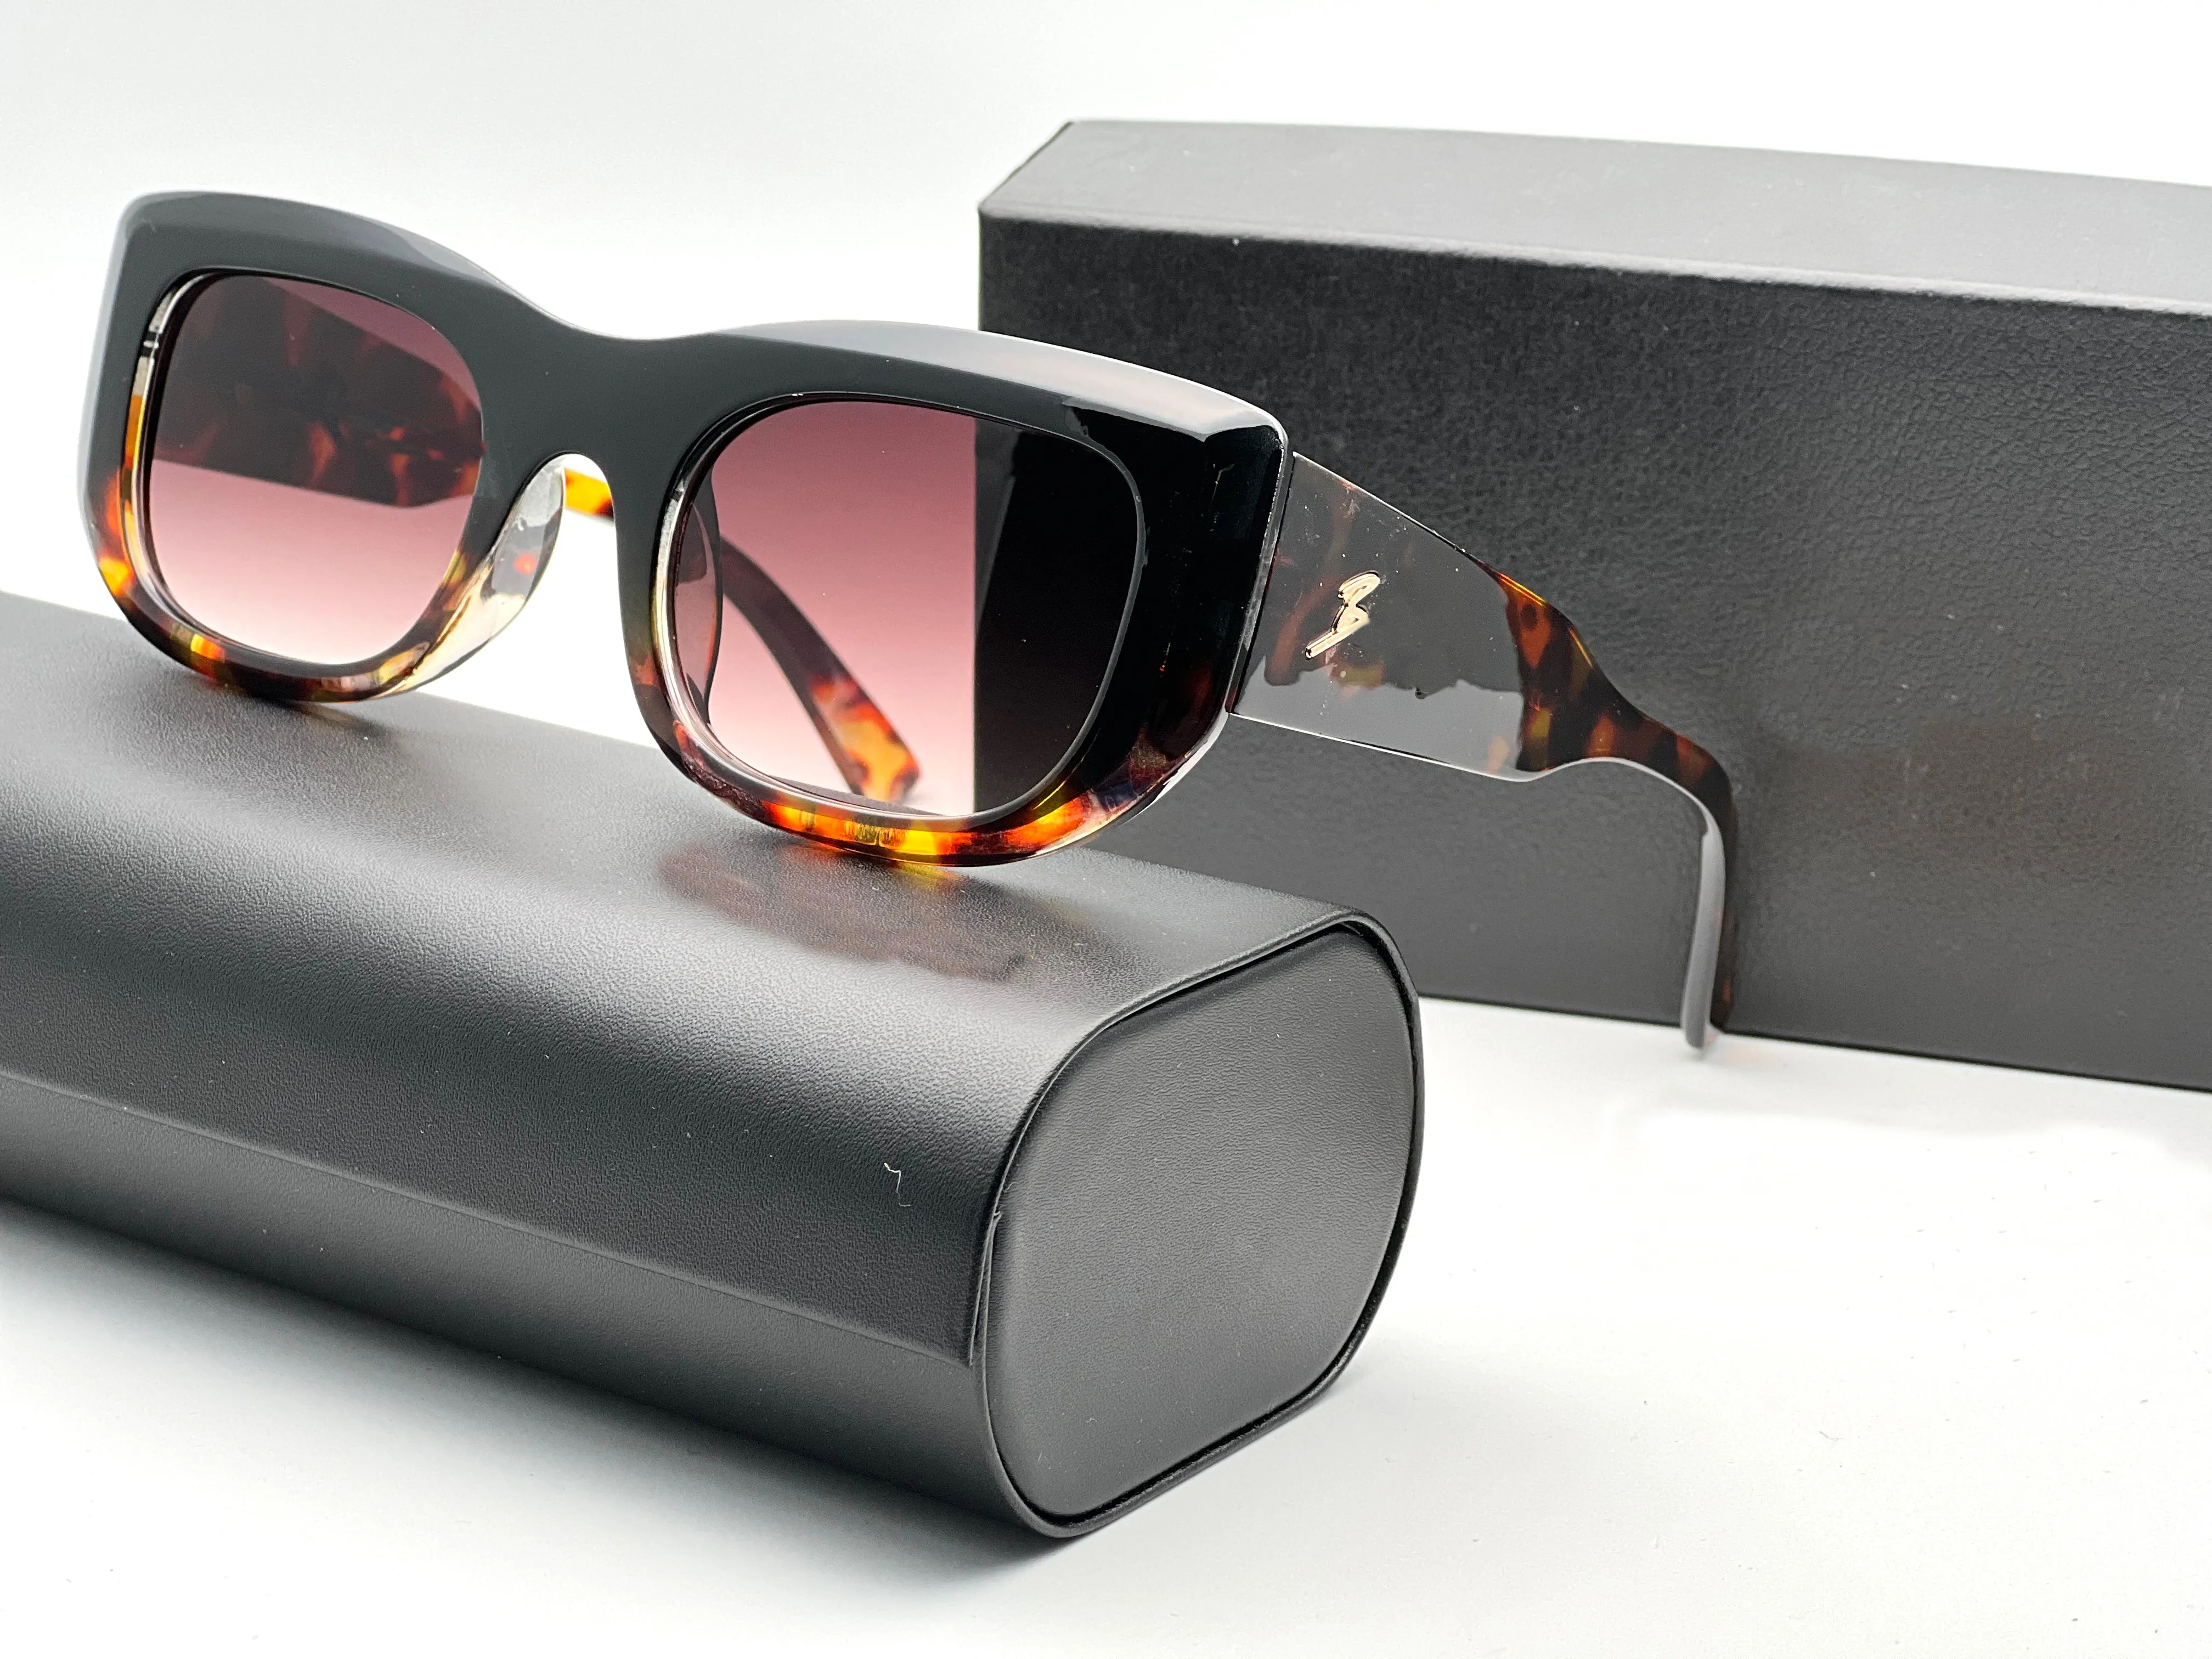 Proteja seus olhos com estilo com nossos óculos de sol Apresse-se e compre um par para sua viagem